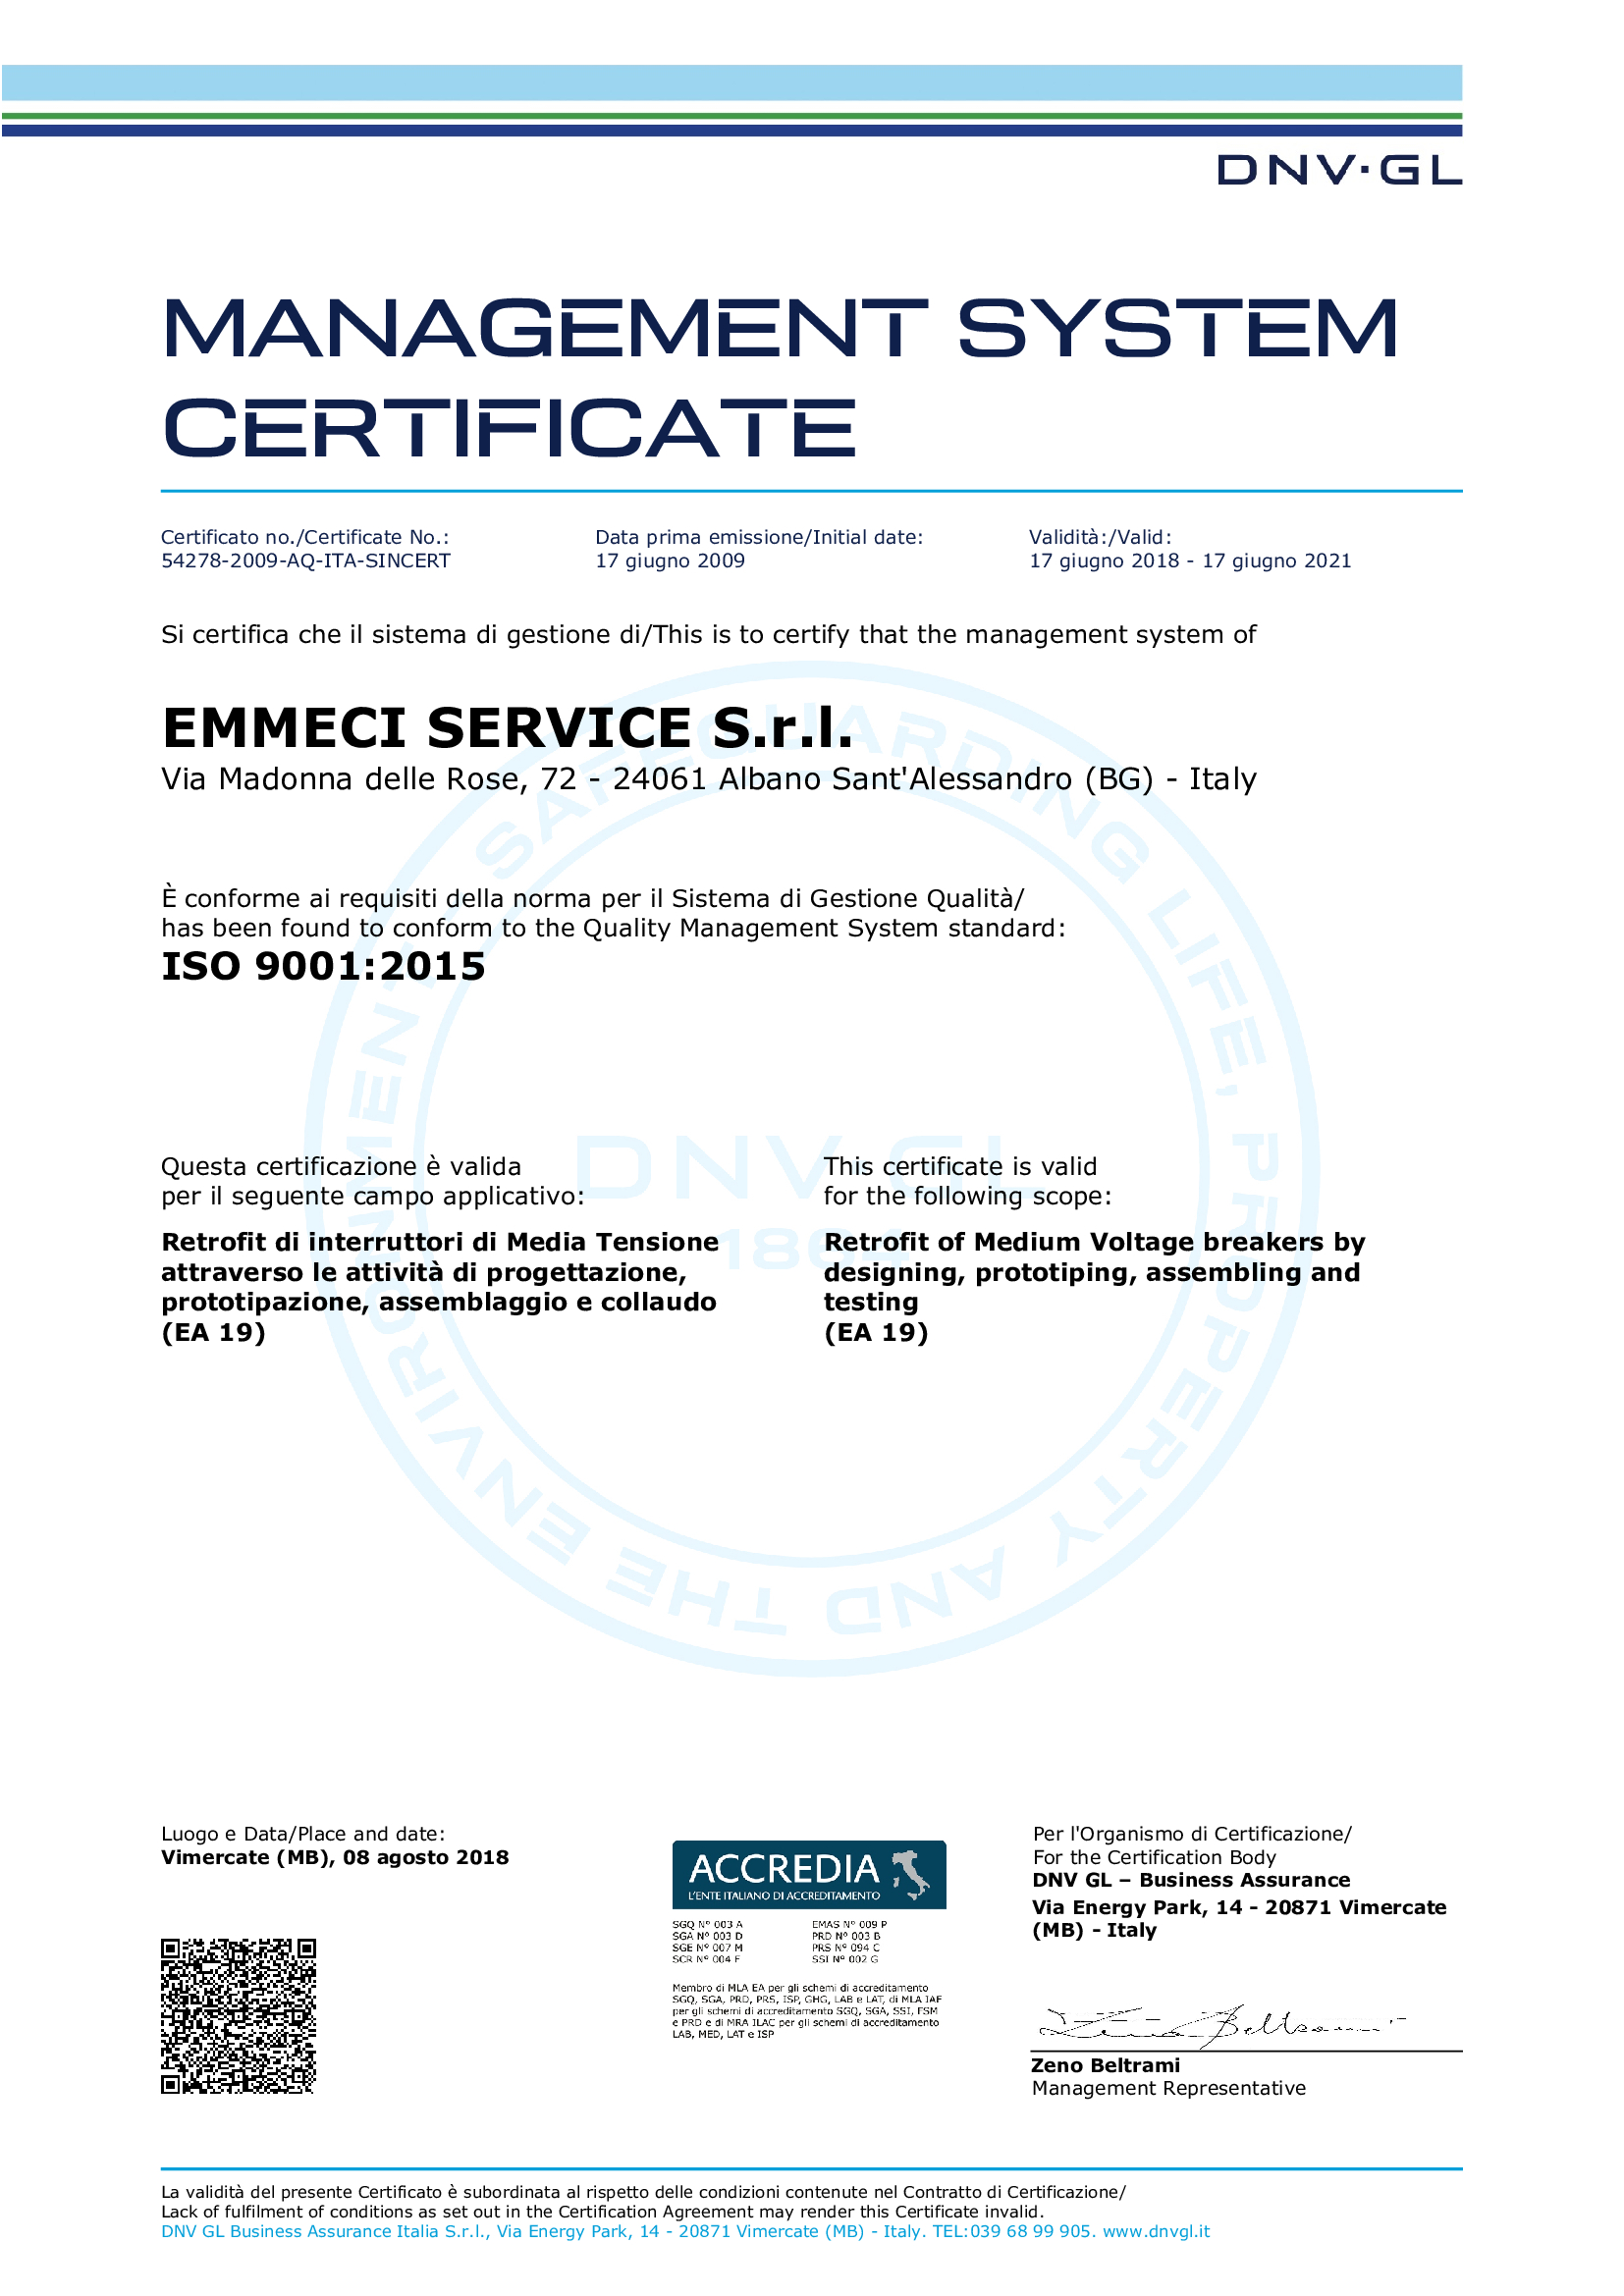 Certificato ISO 9001:2015 di Emmeci Service